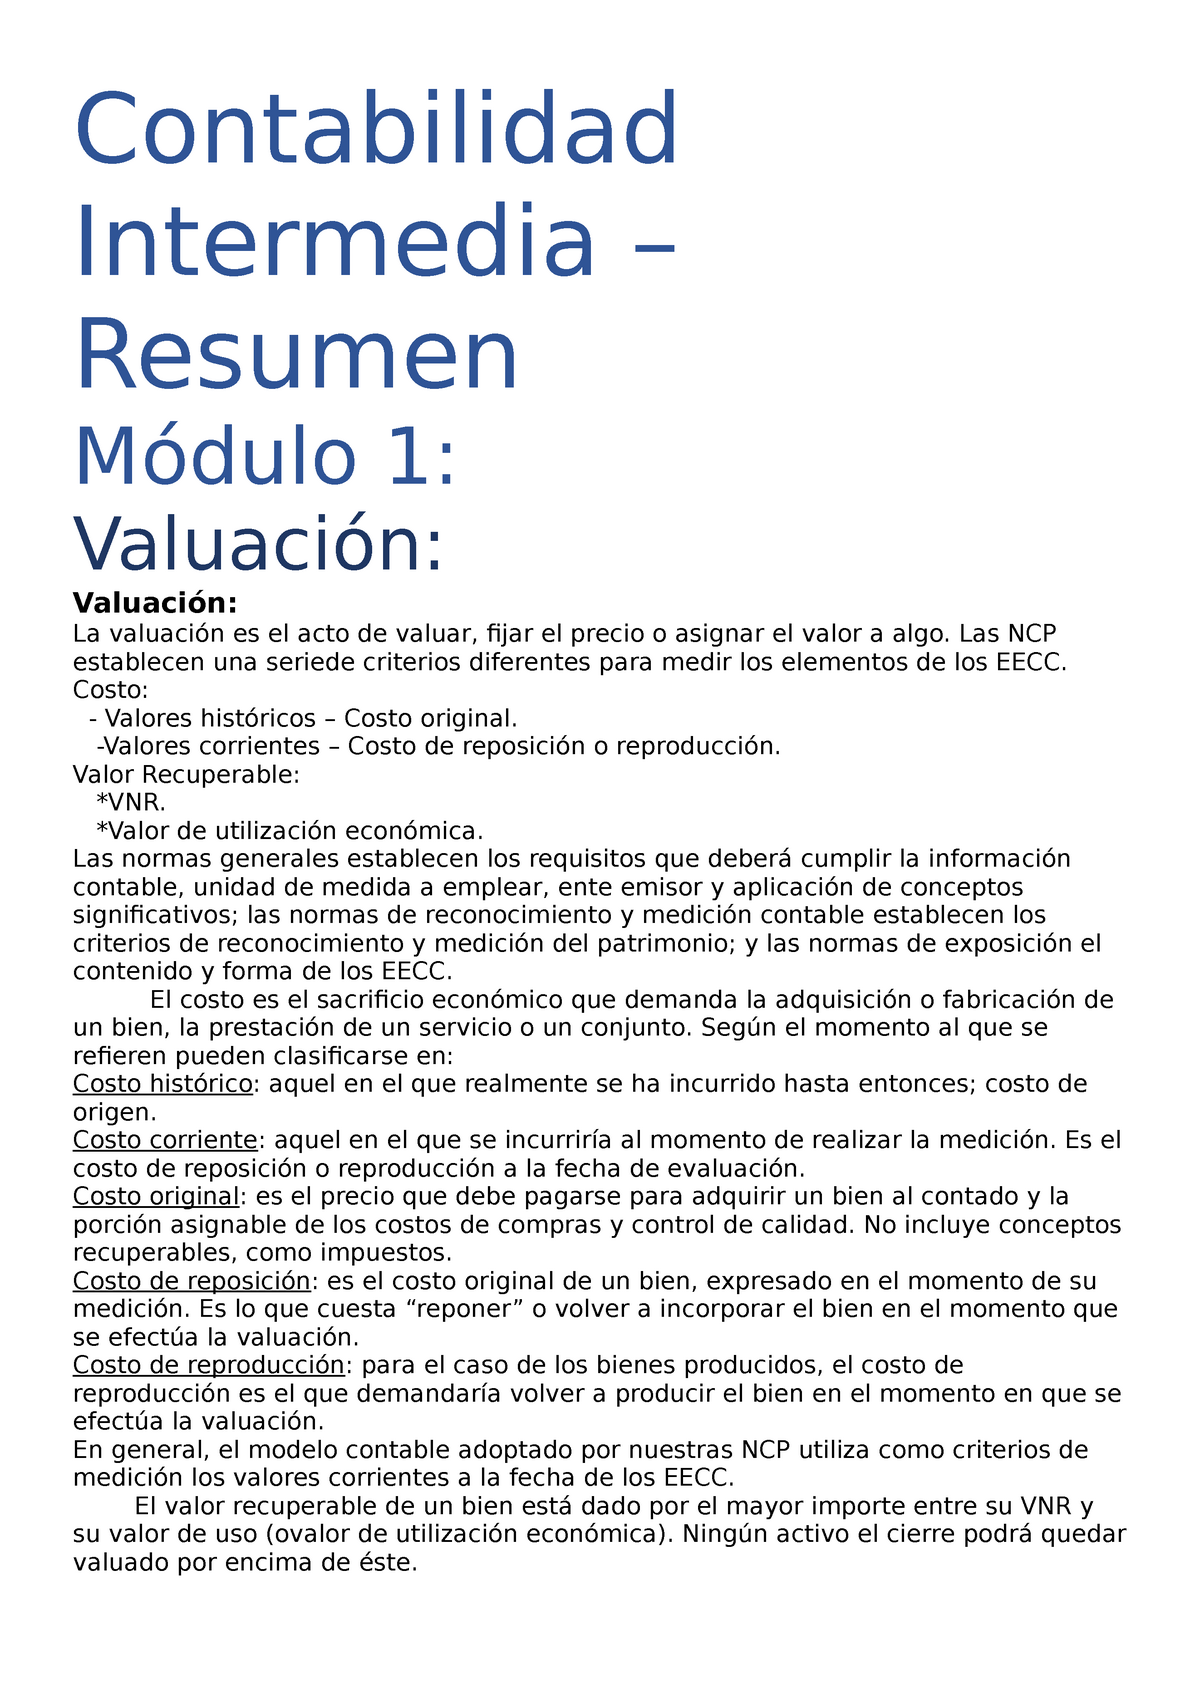 Contabilidad Intermedia 1 Preparacion Examen 1 Mod Contabilidad Intermedia Resumen Módulo 1 1471